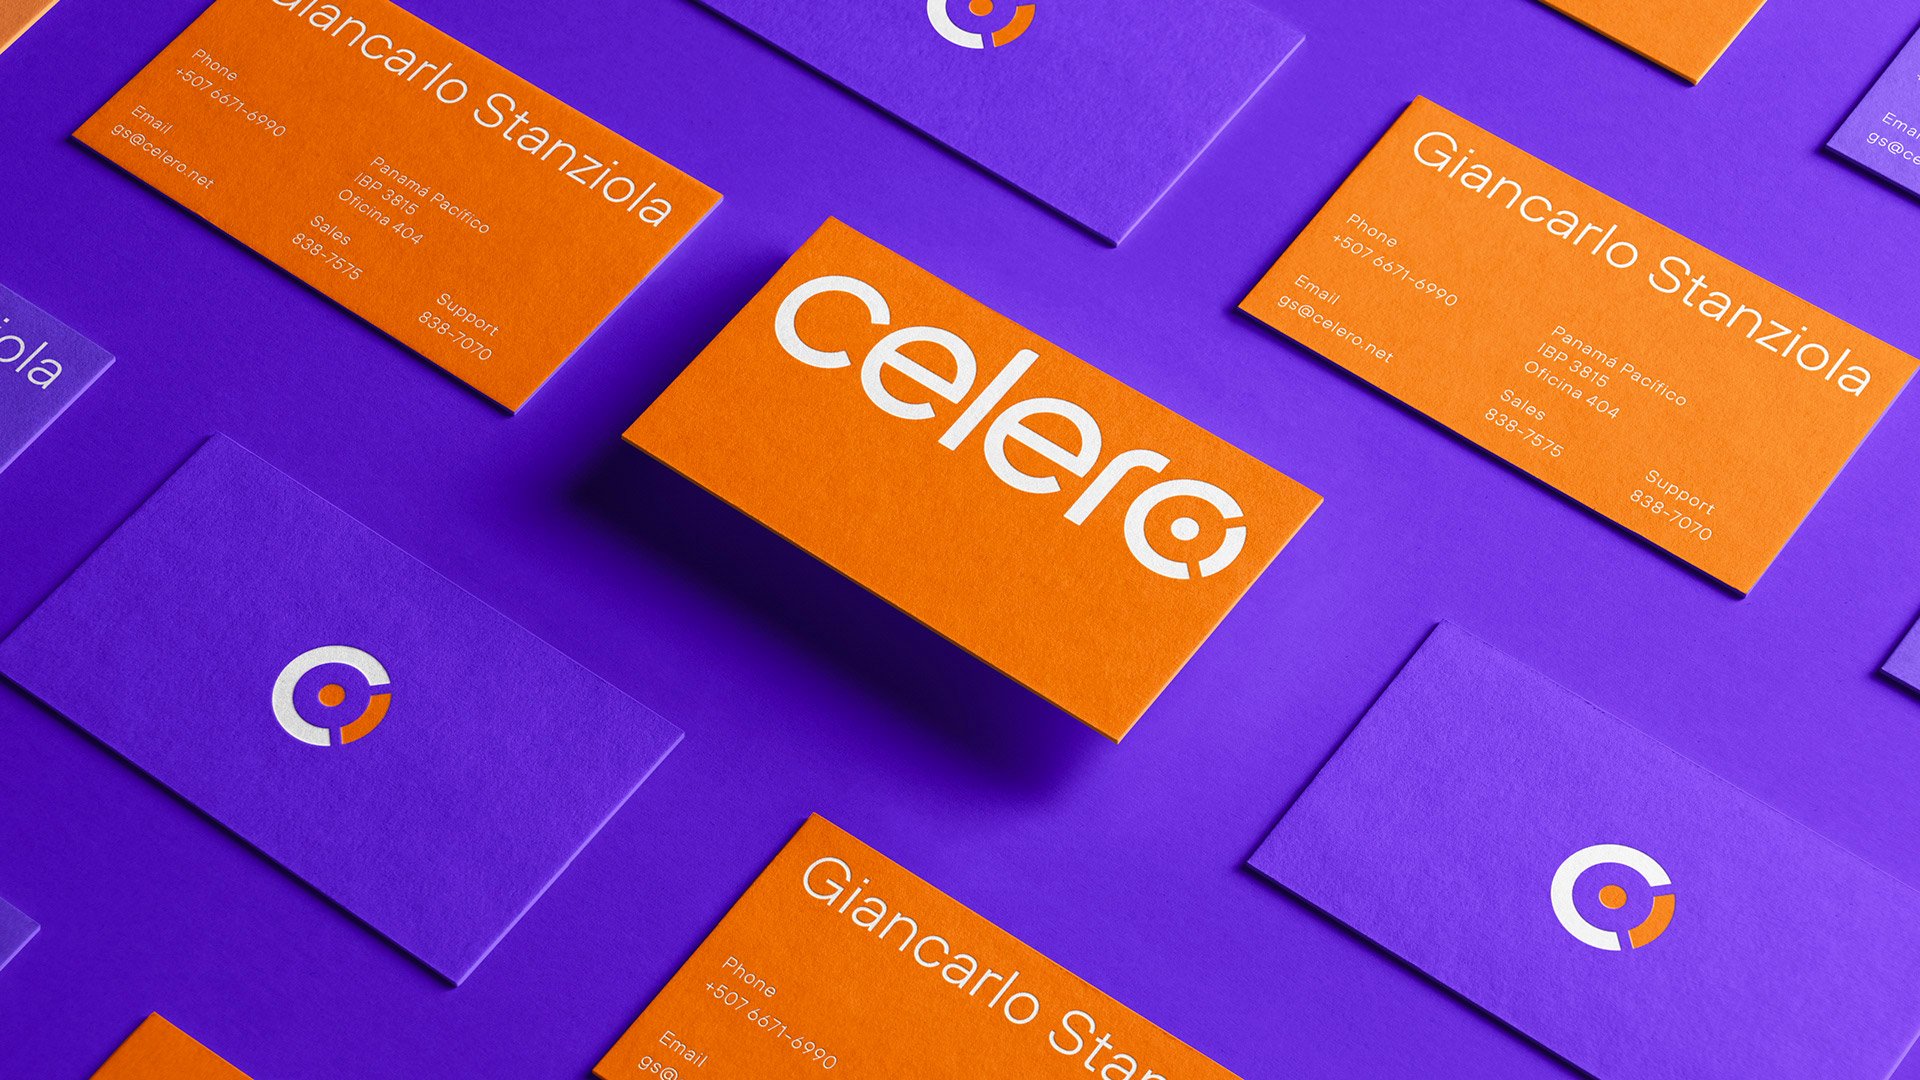 巴拿马电信公司Celero品牌视觉设计